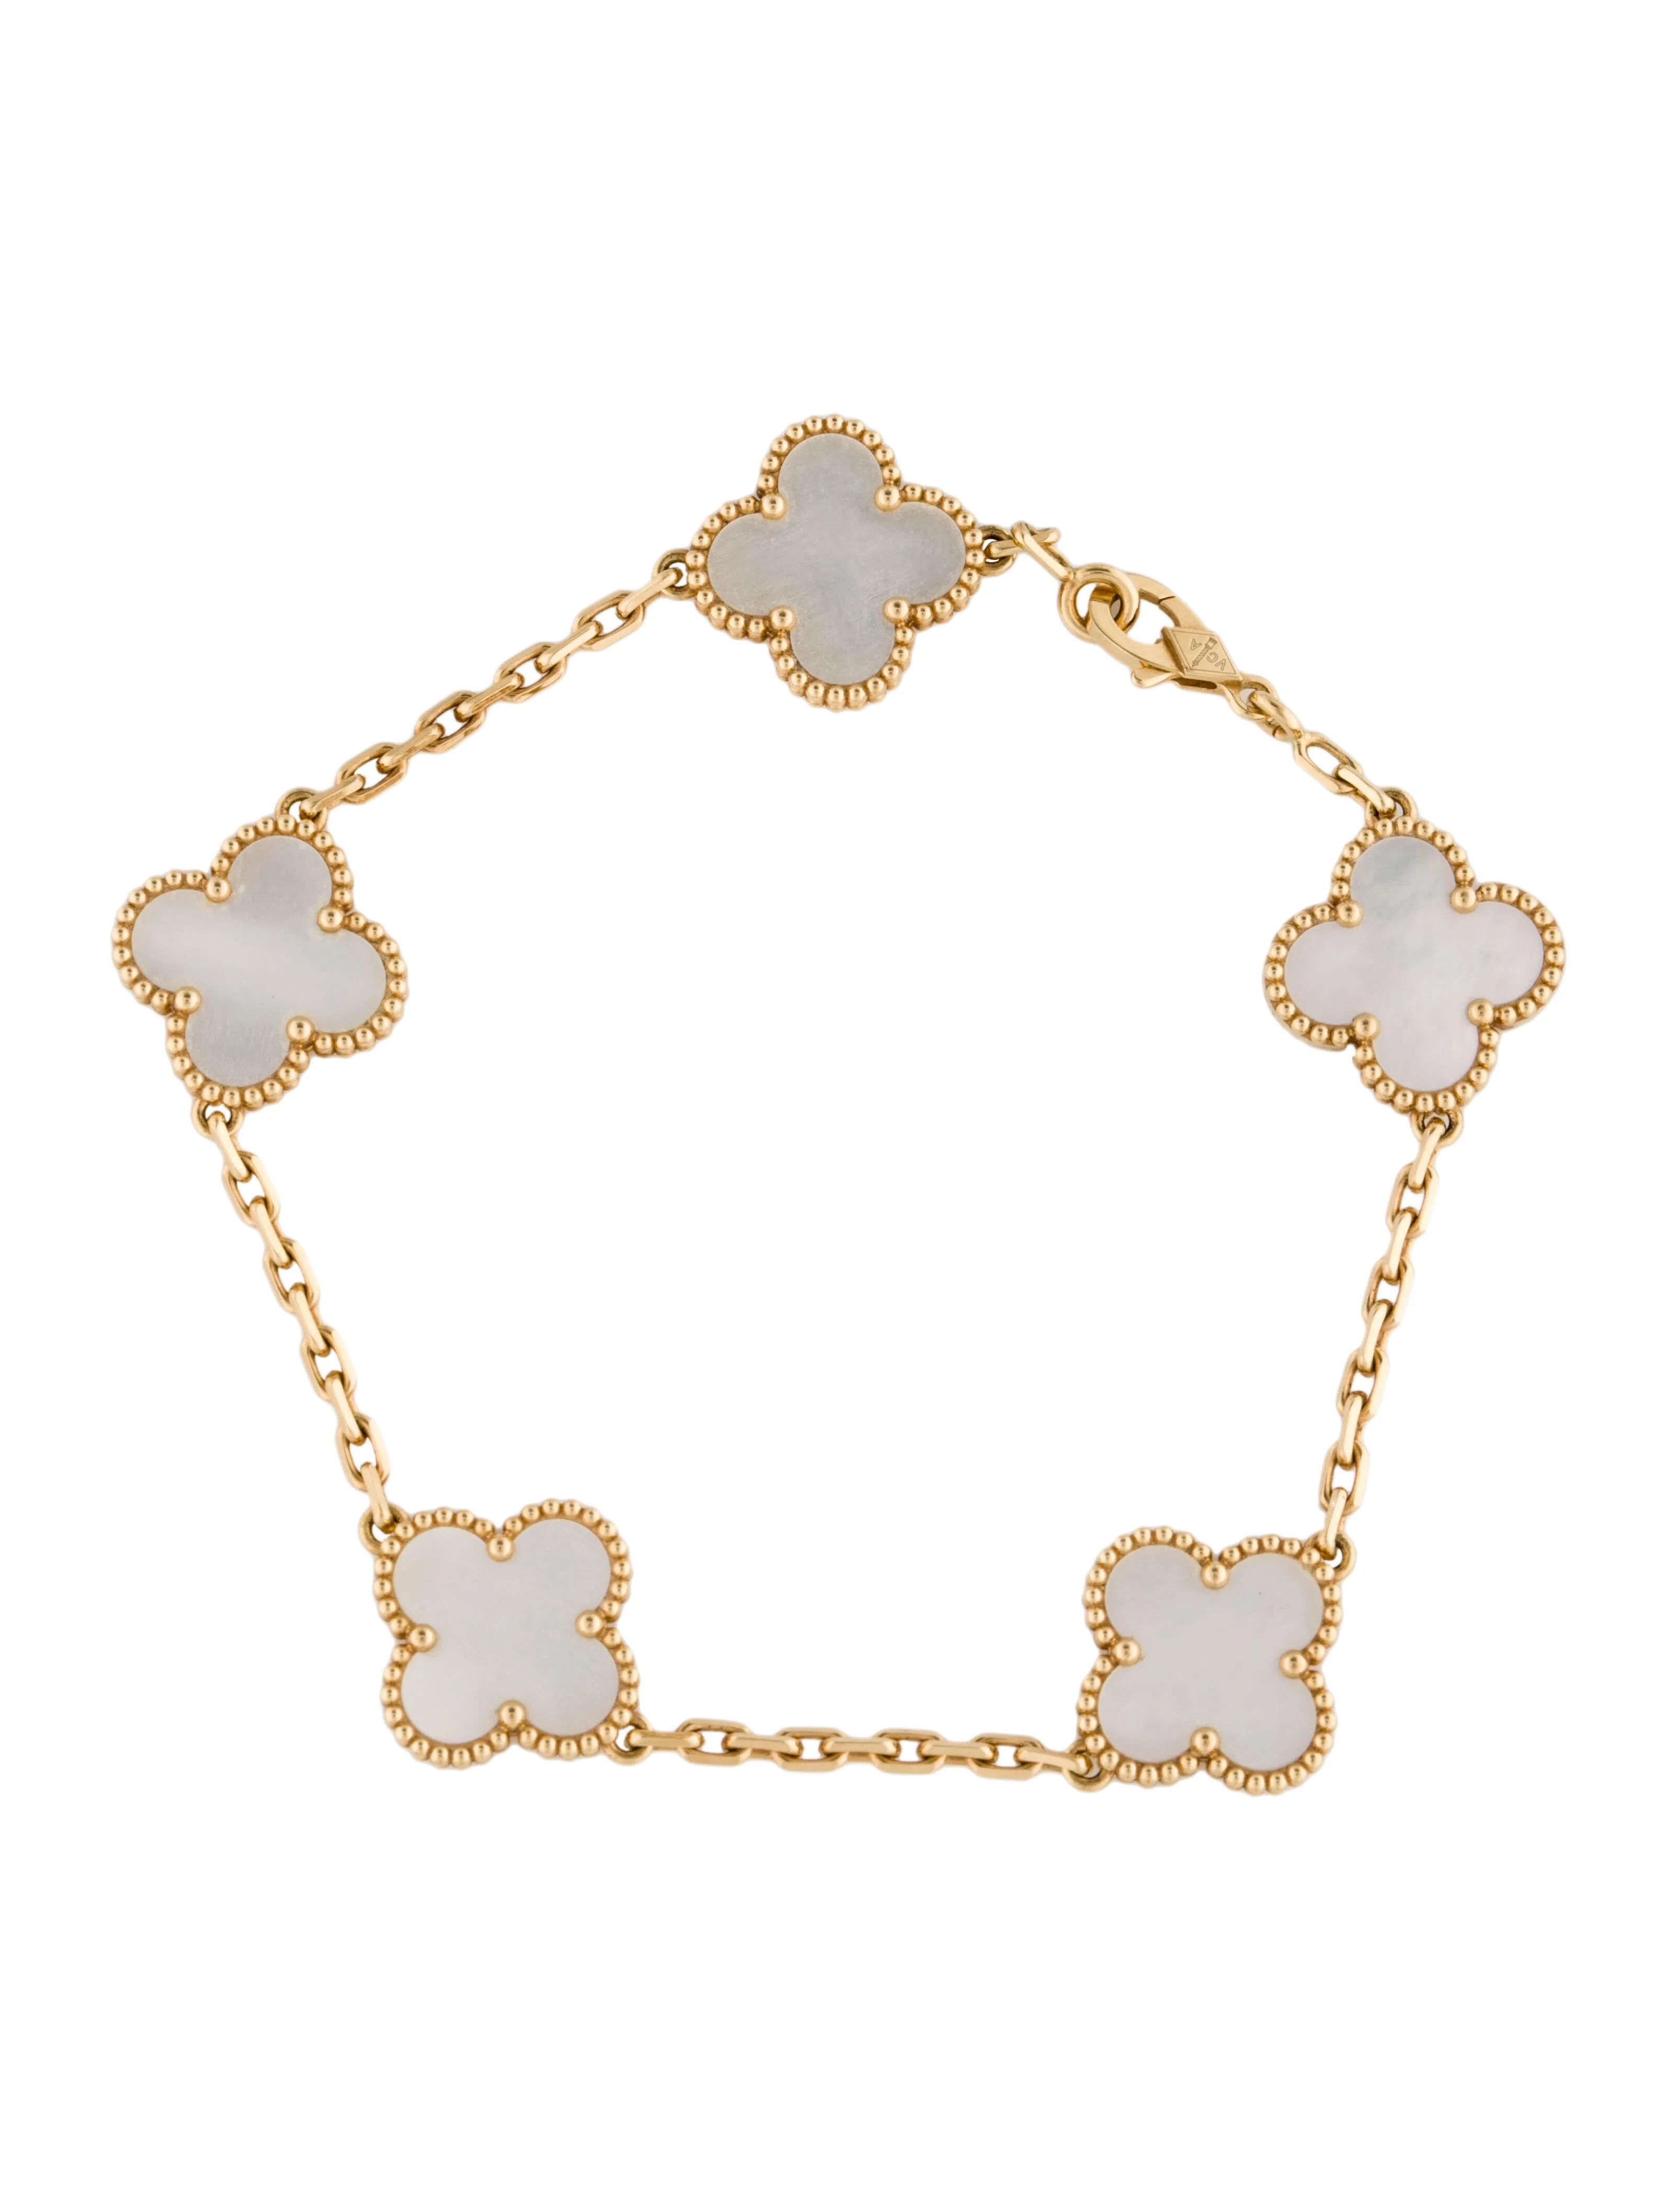 Vintage Alhambra Bracelet, 5 Motifs | The RealReal